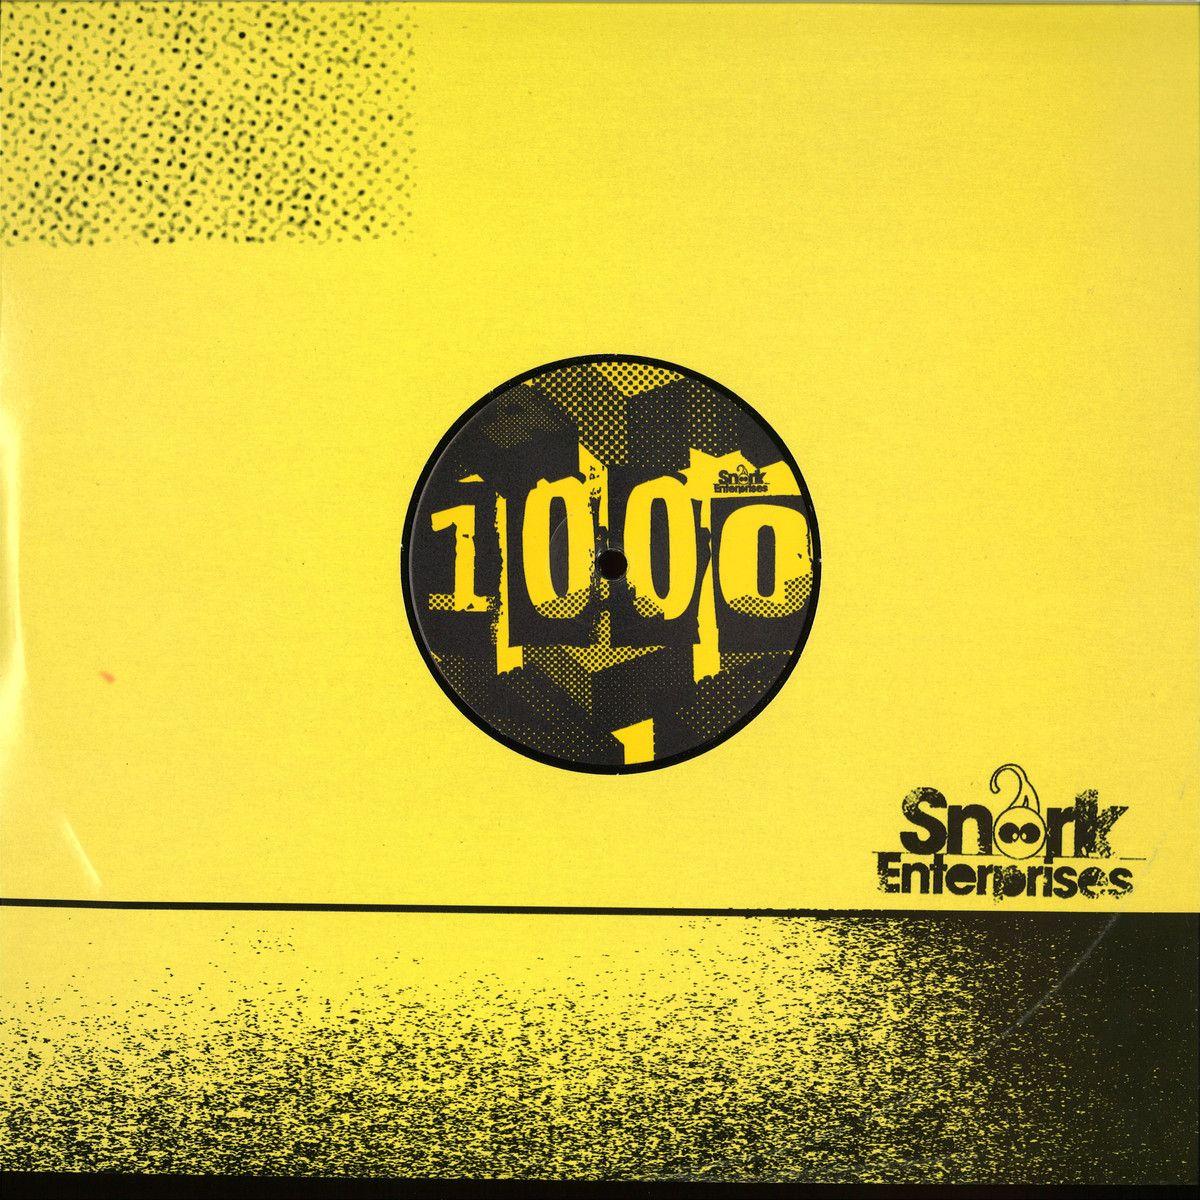 Snork's Logo - Neil Landstrumm / Snork Enterprises SNORK1000